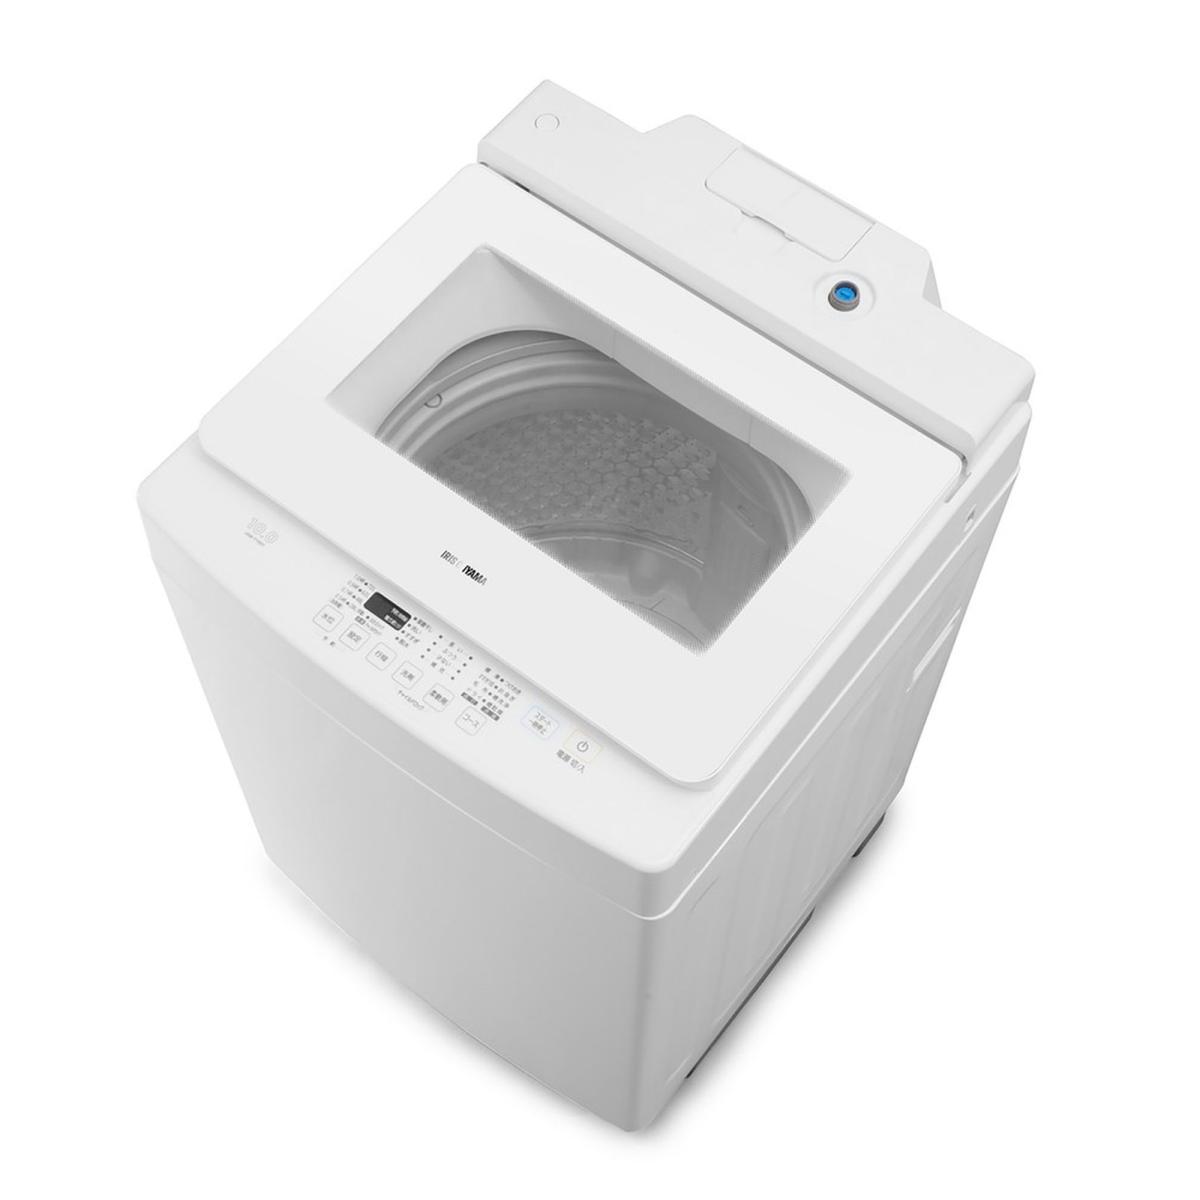 アイリスオーヤマ 10kg 全自動洗濯機 IAW-T1001